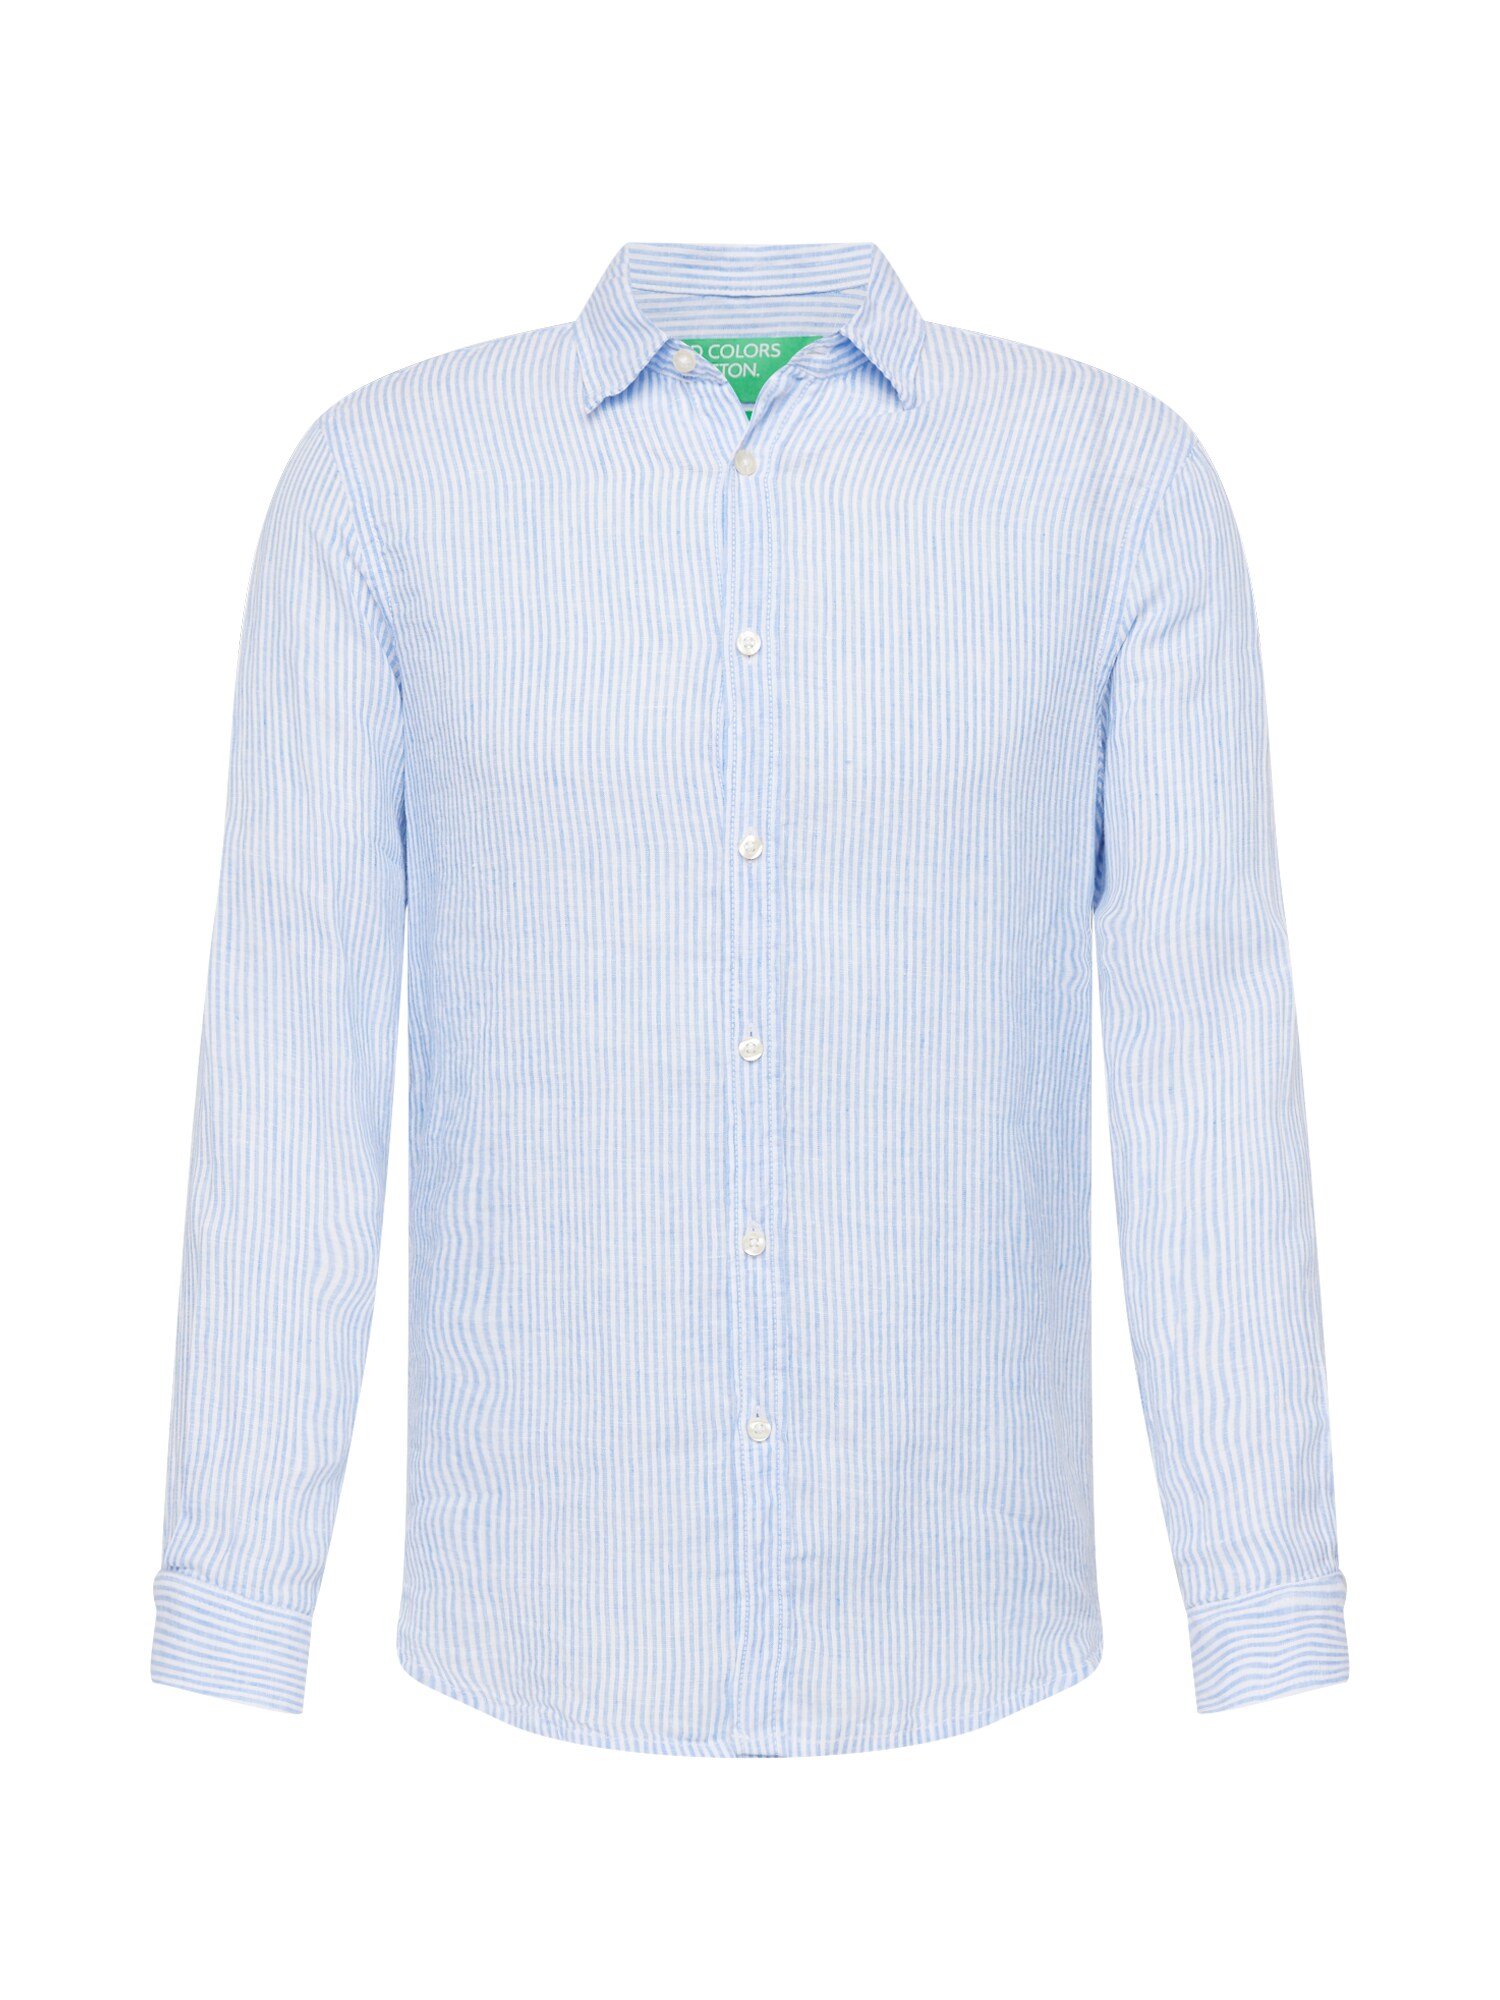 UNITED COLORS OF BENETTON Marškiniai šviesiai mėlyna / balkšva